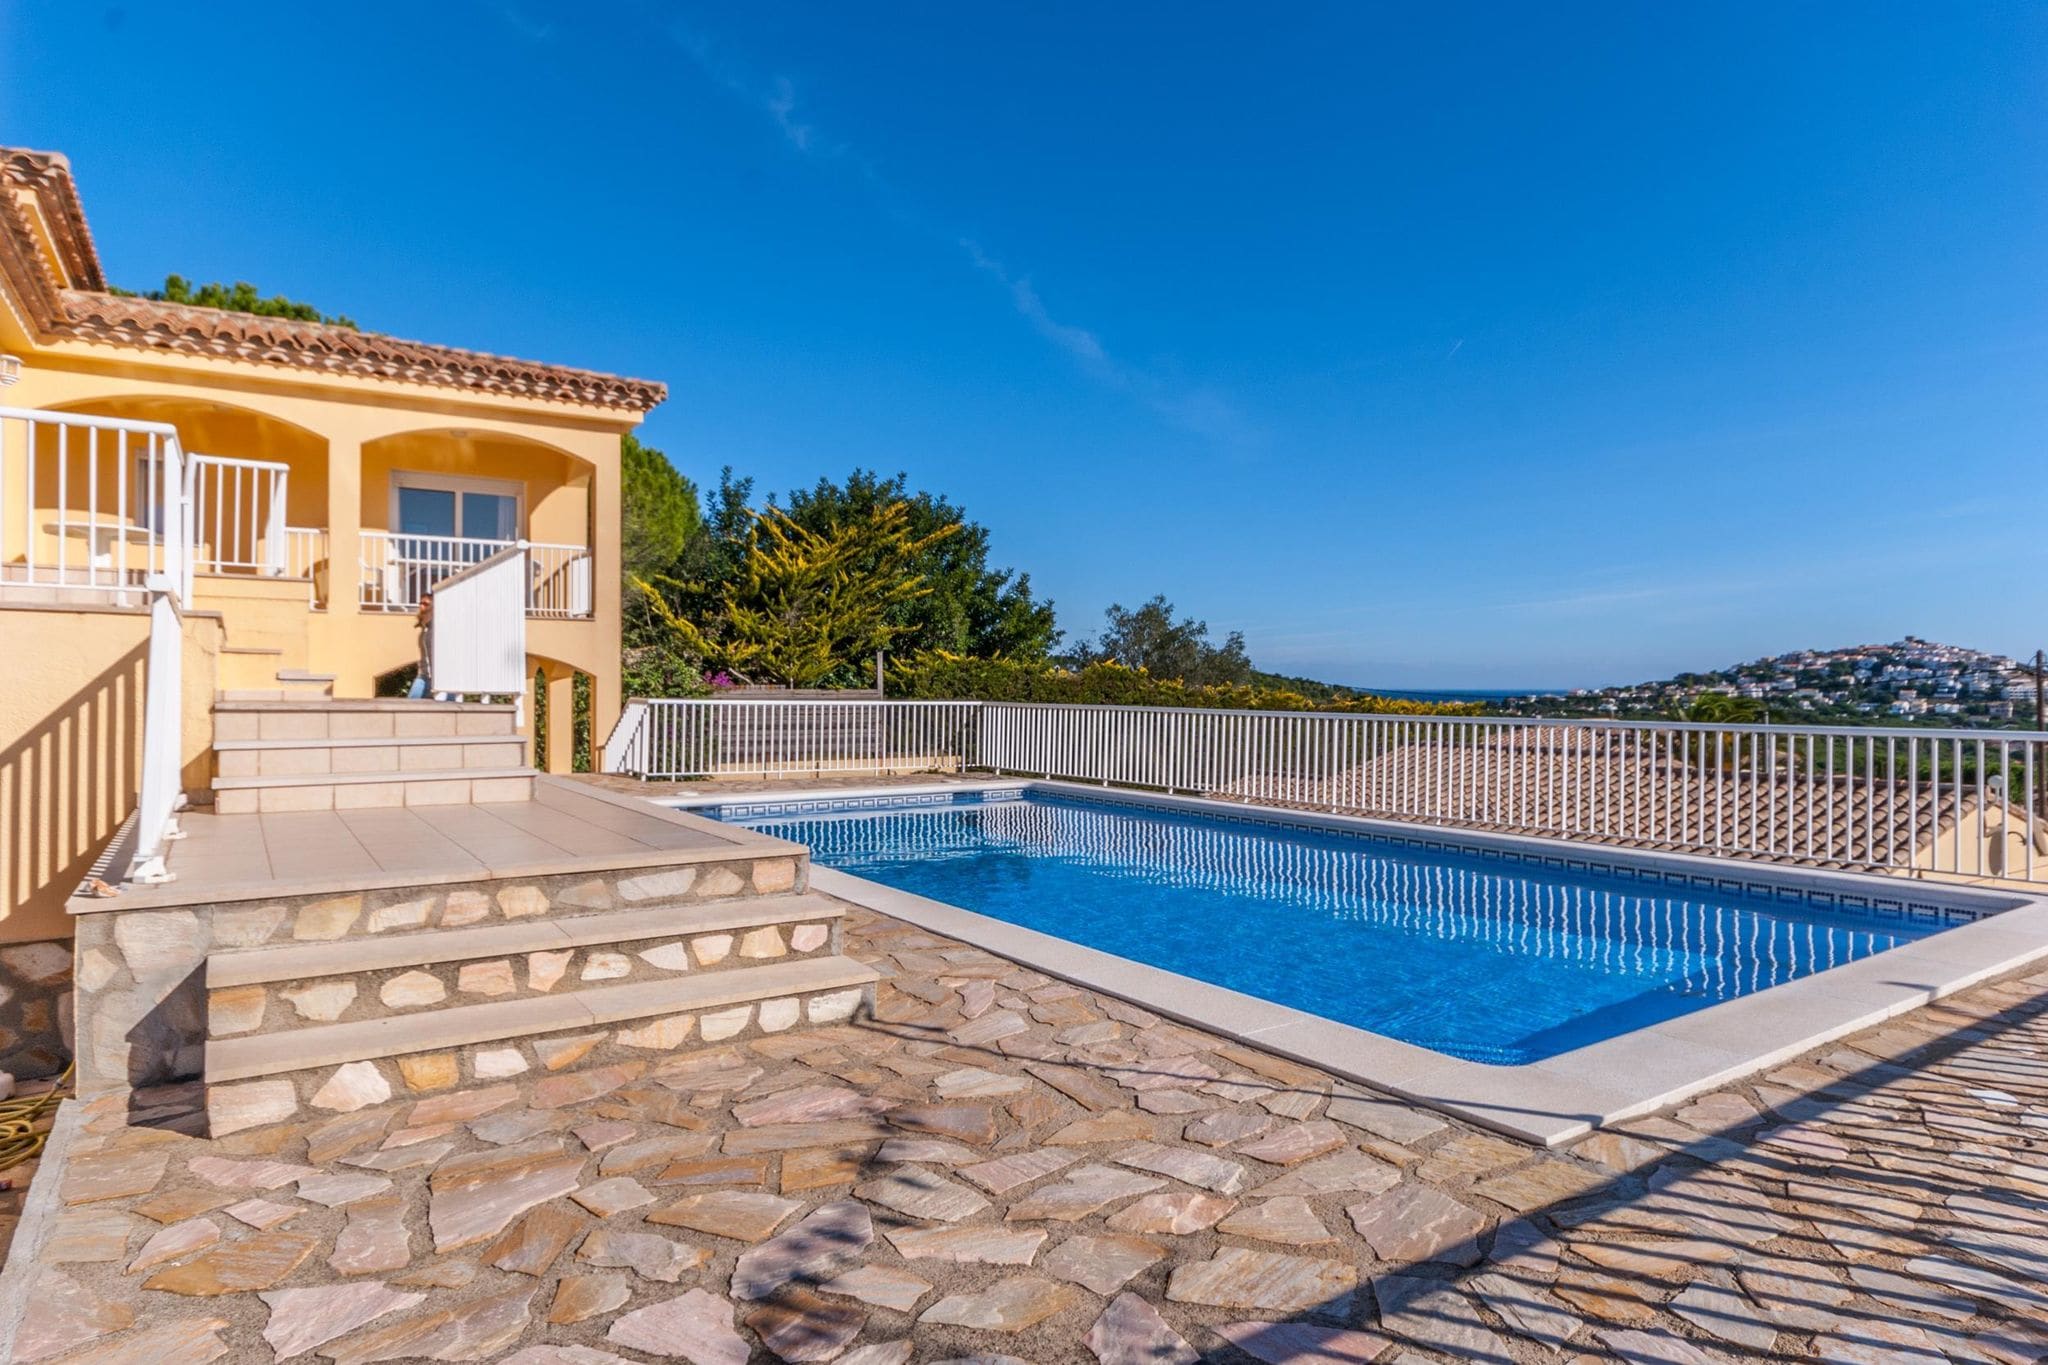 Ruim vakantiehuis in Catalonië met privézwembad